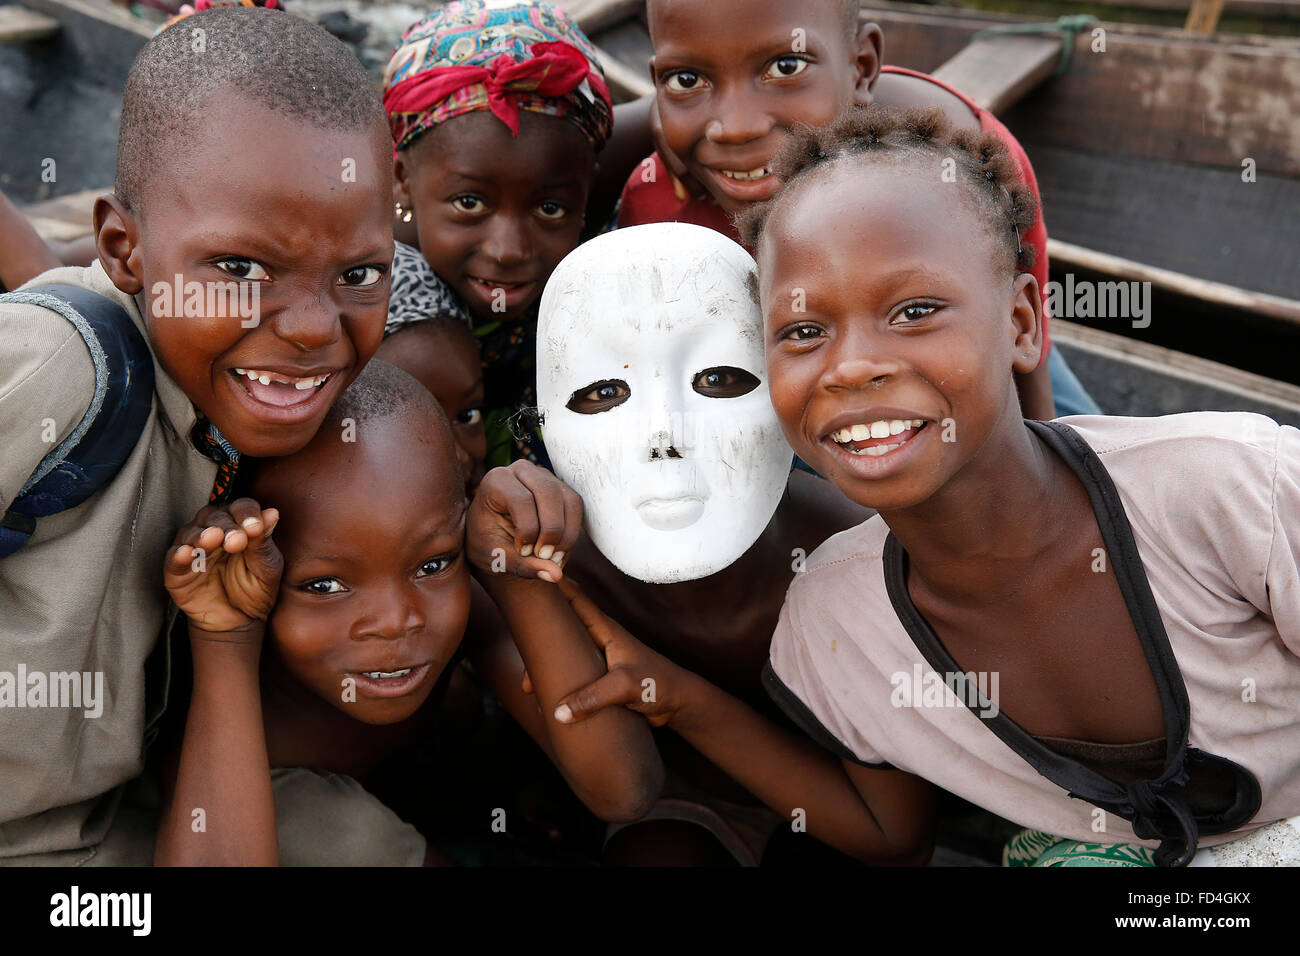 Benin-Kinder, von die einer eine weiße Maske trägt Stockfoto